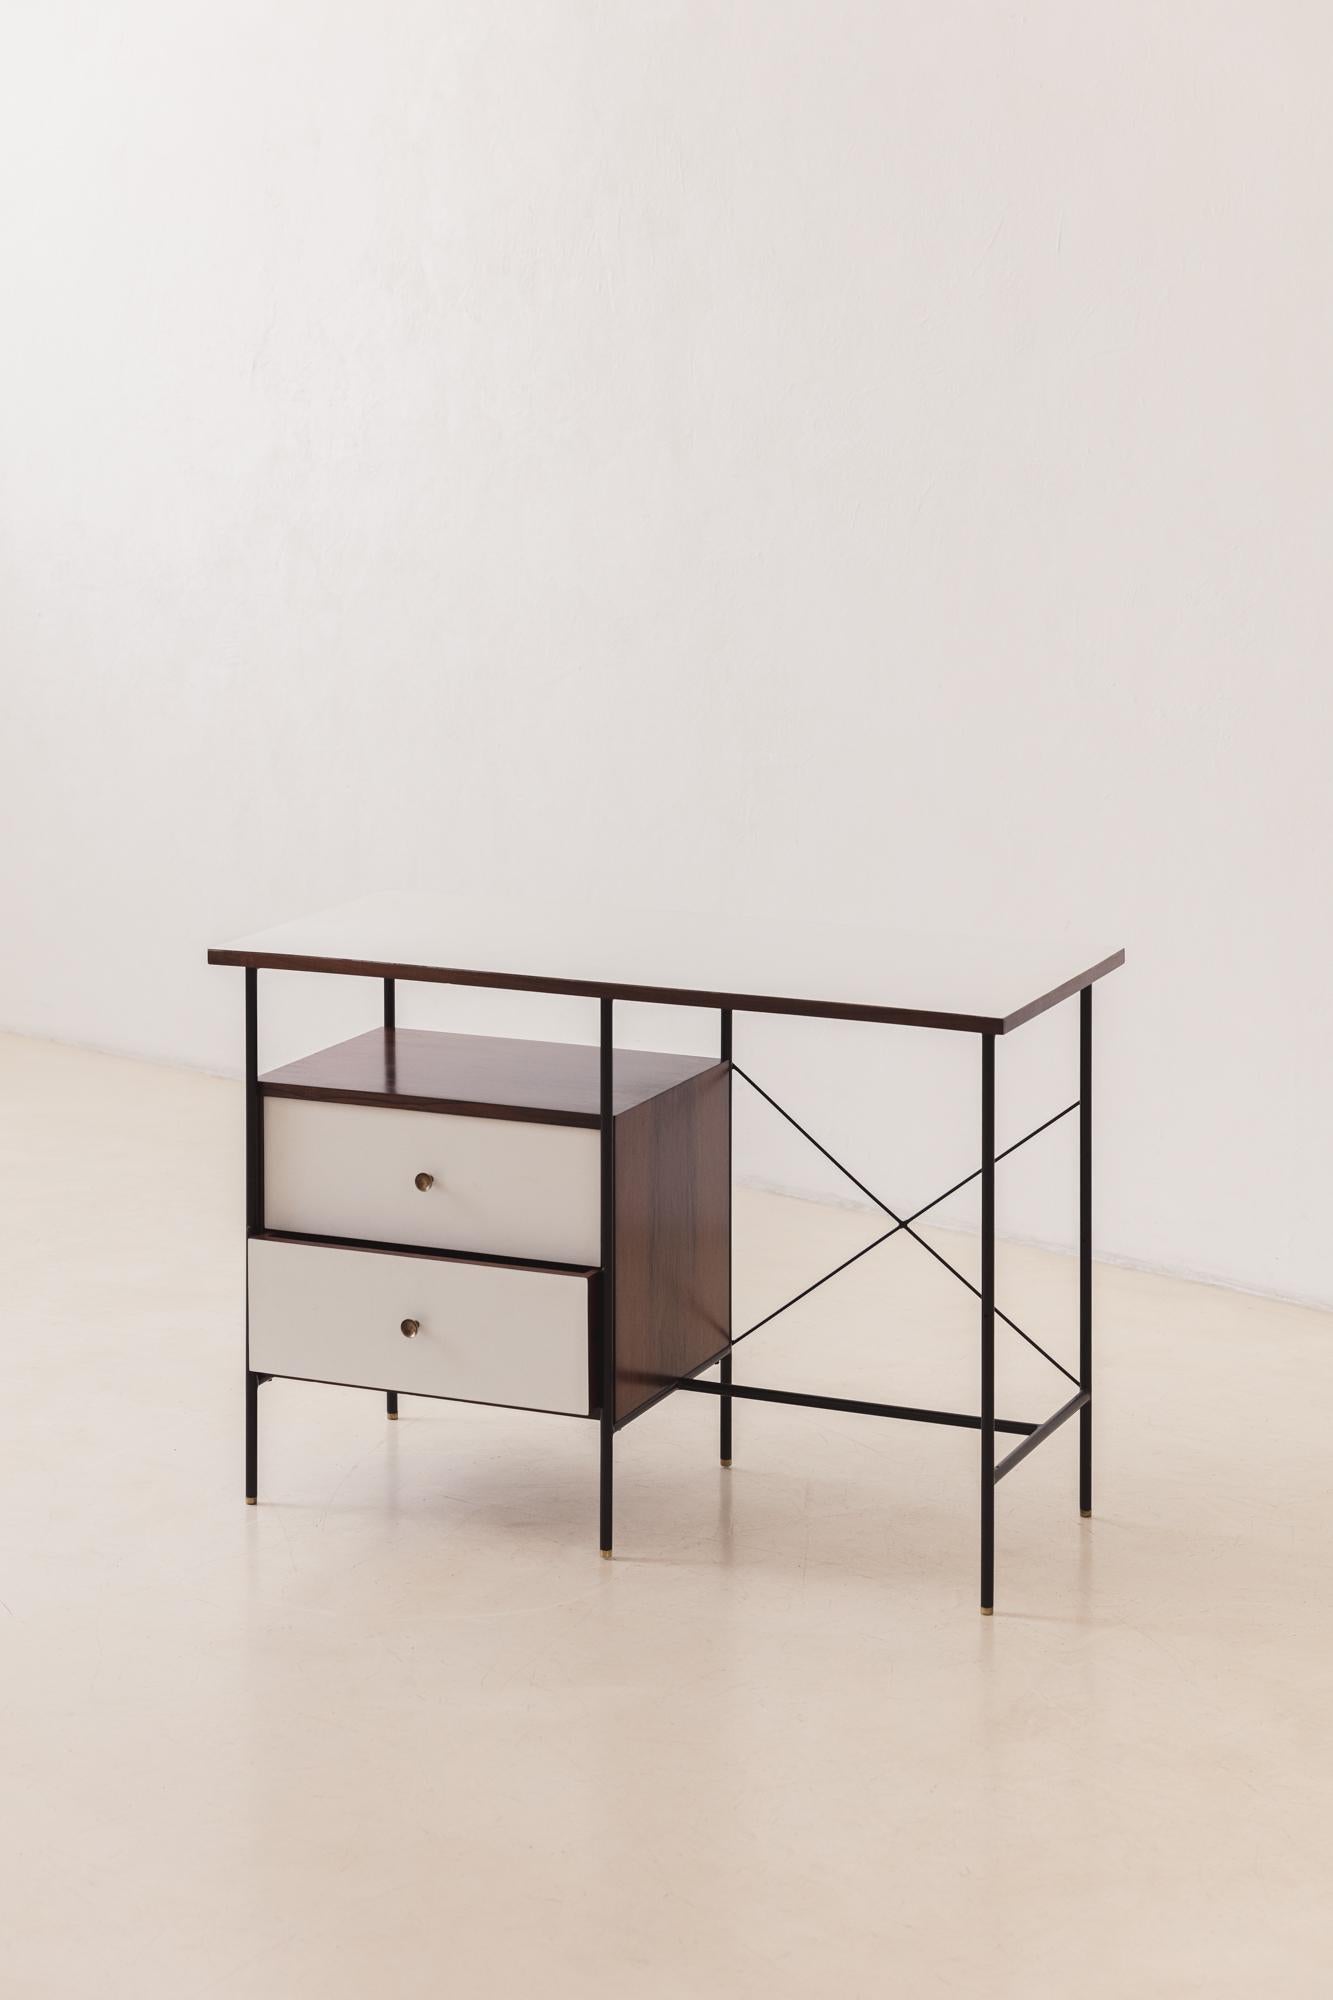 Dieser Schreibtisch wurde von dem Pionierunternehmen Unilabor hergestellt, dessen Komponenten von Geraldo de Barros (1923-1998) entworfen wurden. Die Eisenstruktur trägt eine Platte und Schubladen, die mit Formica bedeckt sind - eine neue dekorative